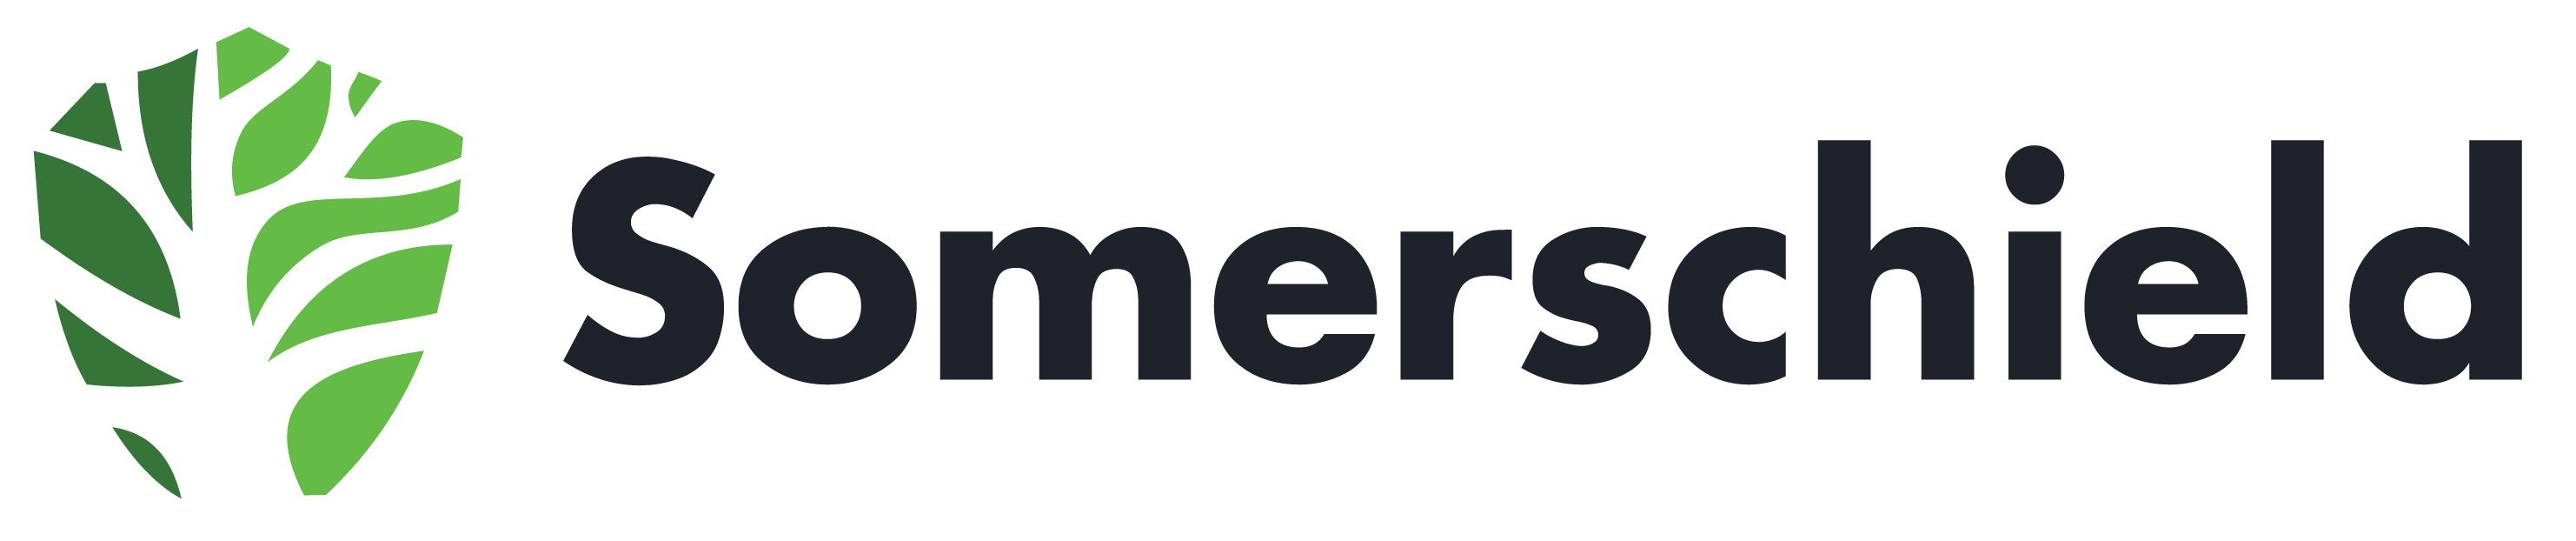 Somerschield-logo-new-01-e1680099458544.png